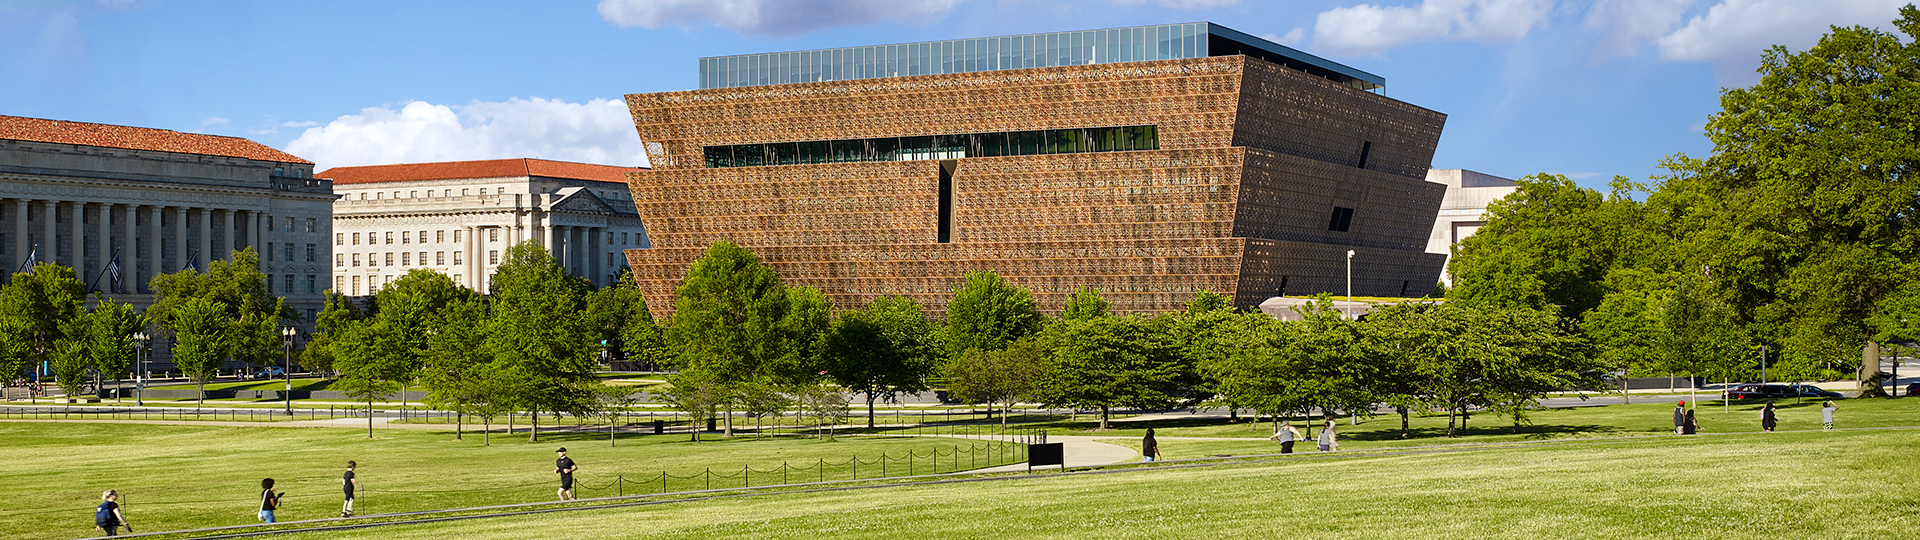 Museo Nacional de Historia y Cultura Afroamericana en el National Mall con el Monumento a Washington